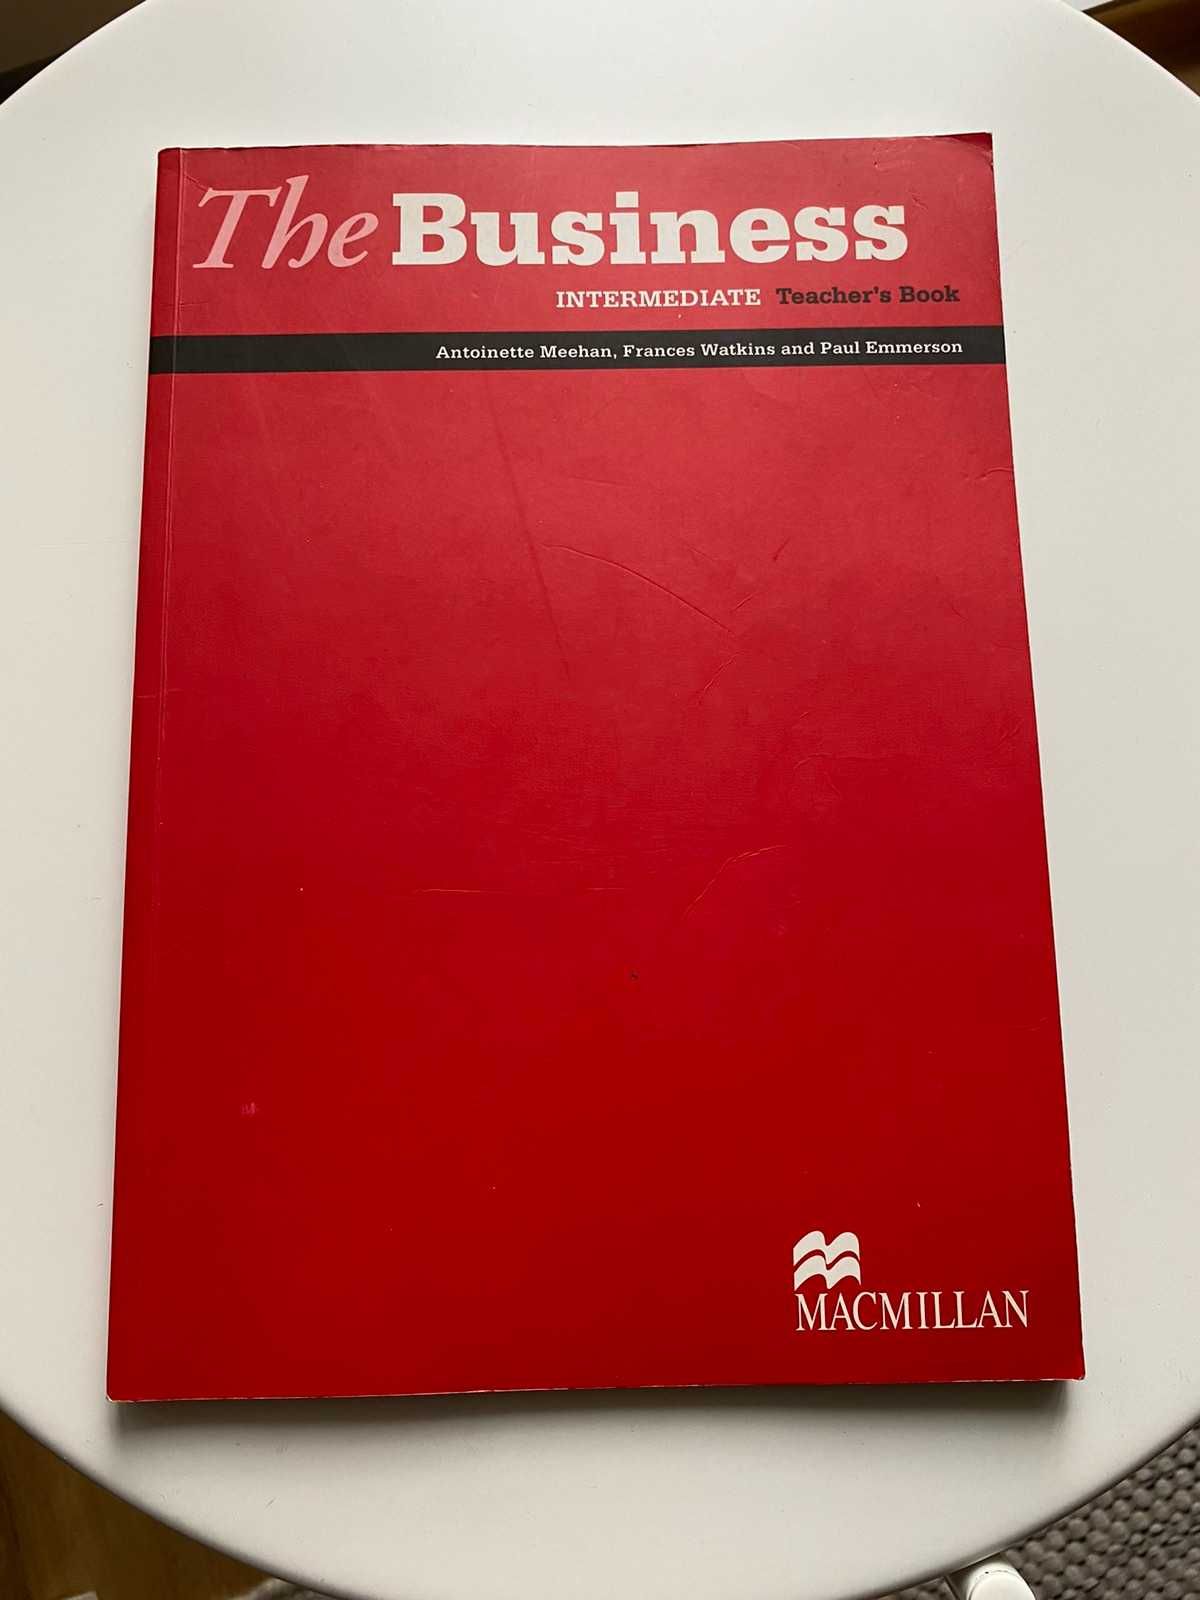 The Business Int. książka dla nauczyciela